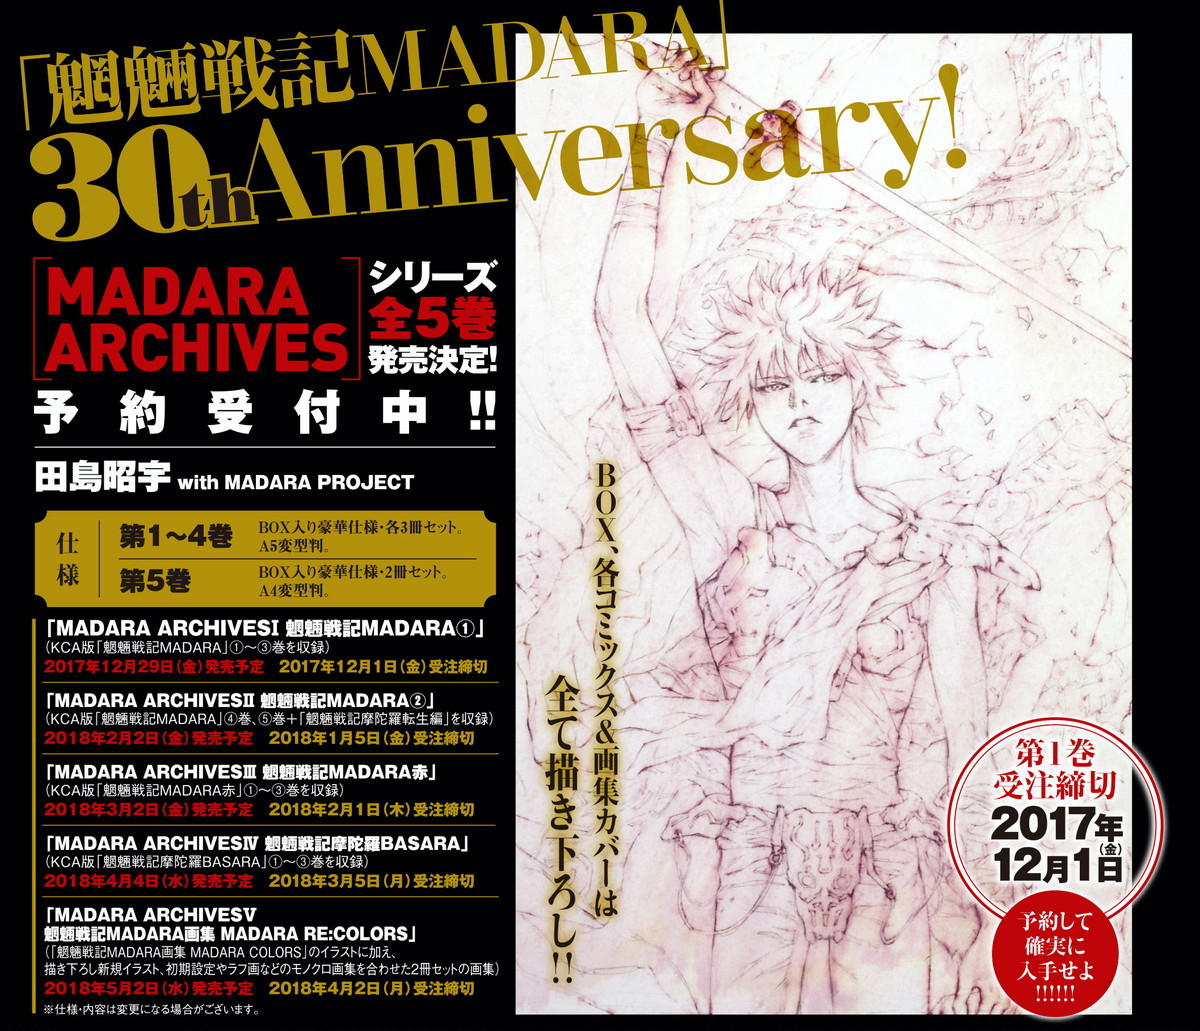 魍魎戦記MADARA』30周年記念 限定愛蔵版が5カ月連続刊行決定 | SPICE 